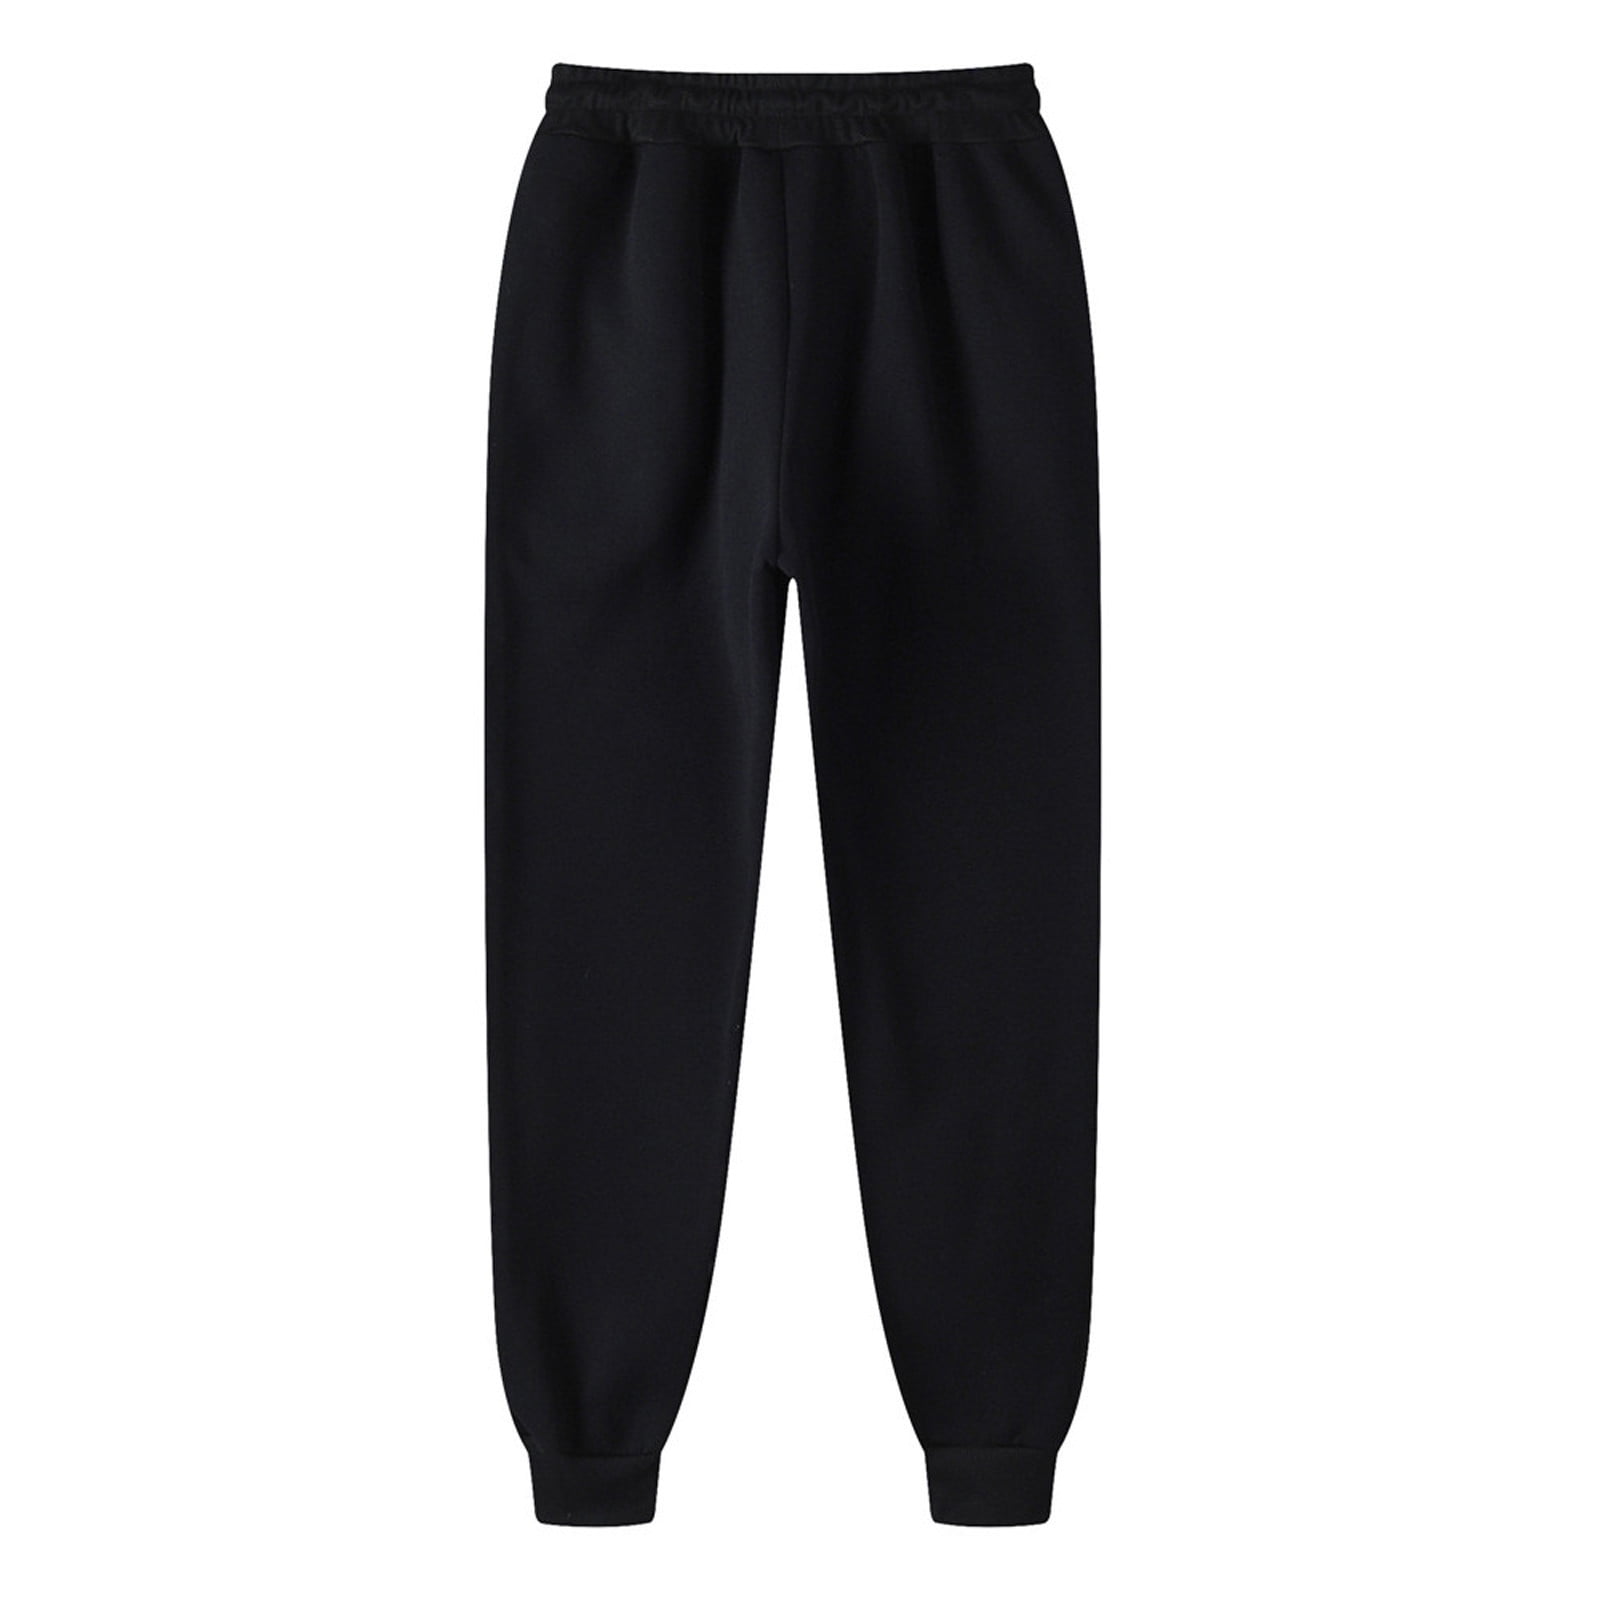 Zeceouar Sweatpants For Men Winter Solid Color High Waist Warm Pants ...